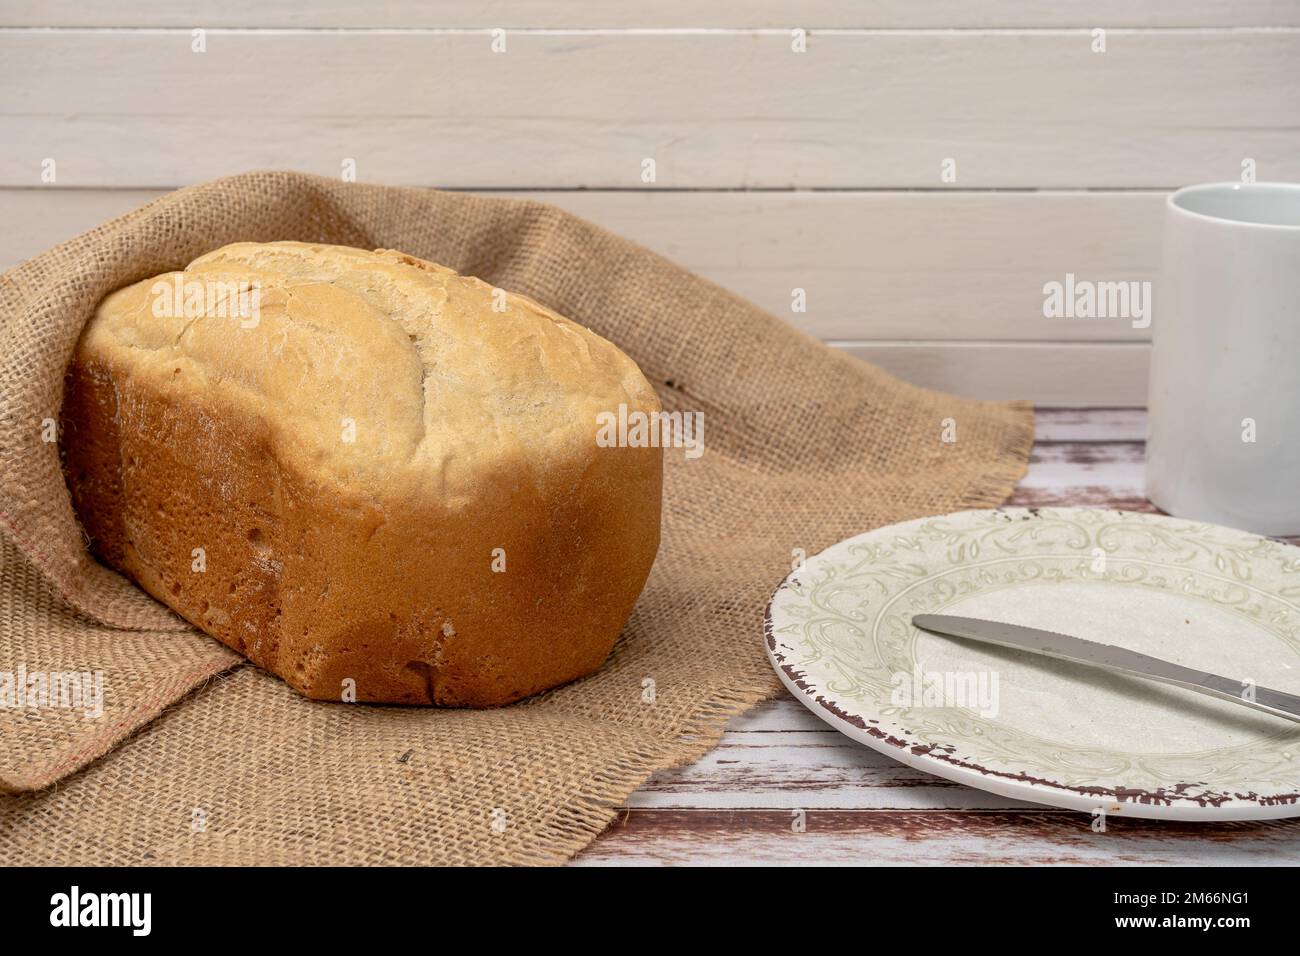 Pan casero hecho con una máquina de pan casero. Foto de stock